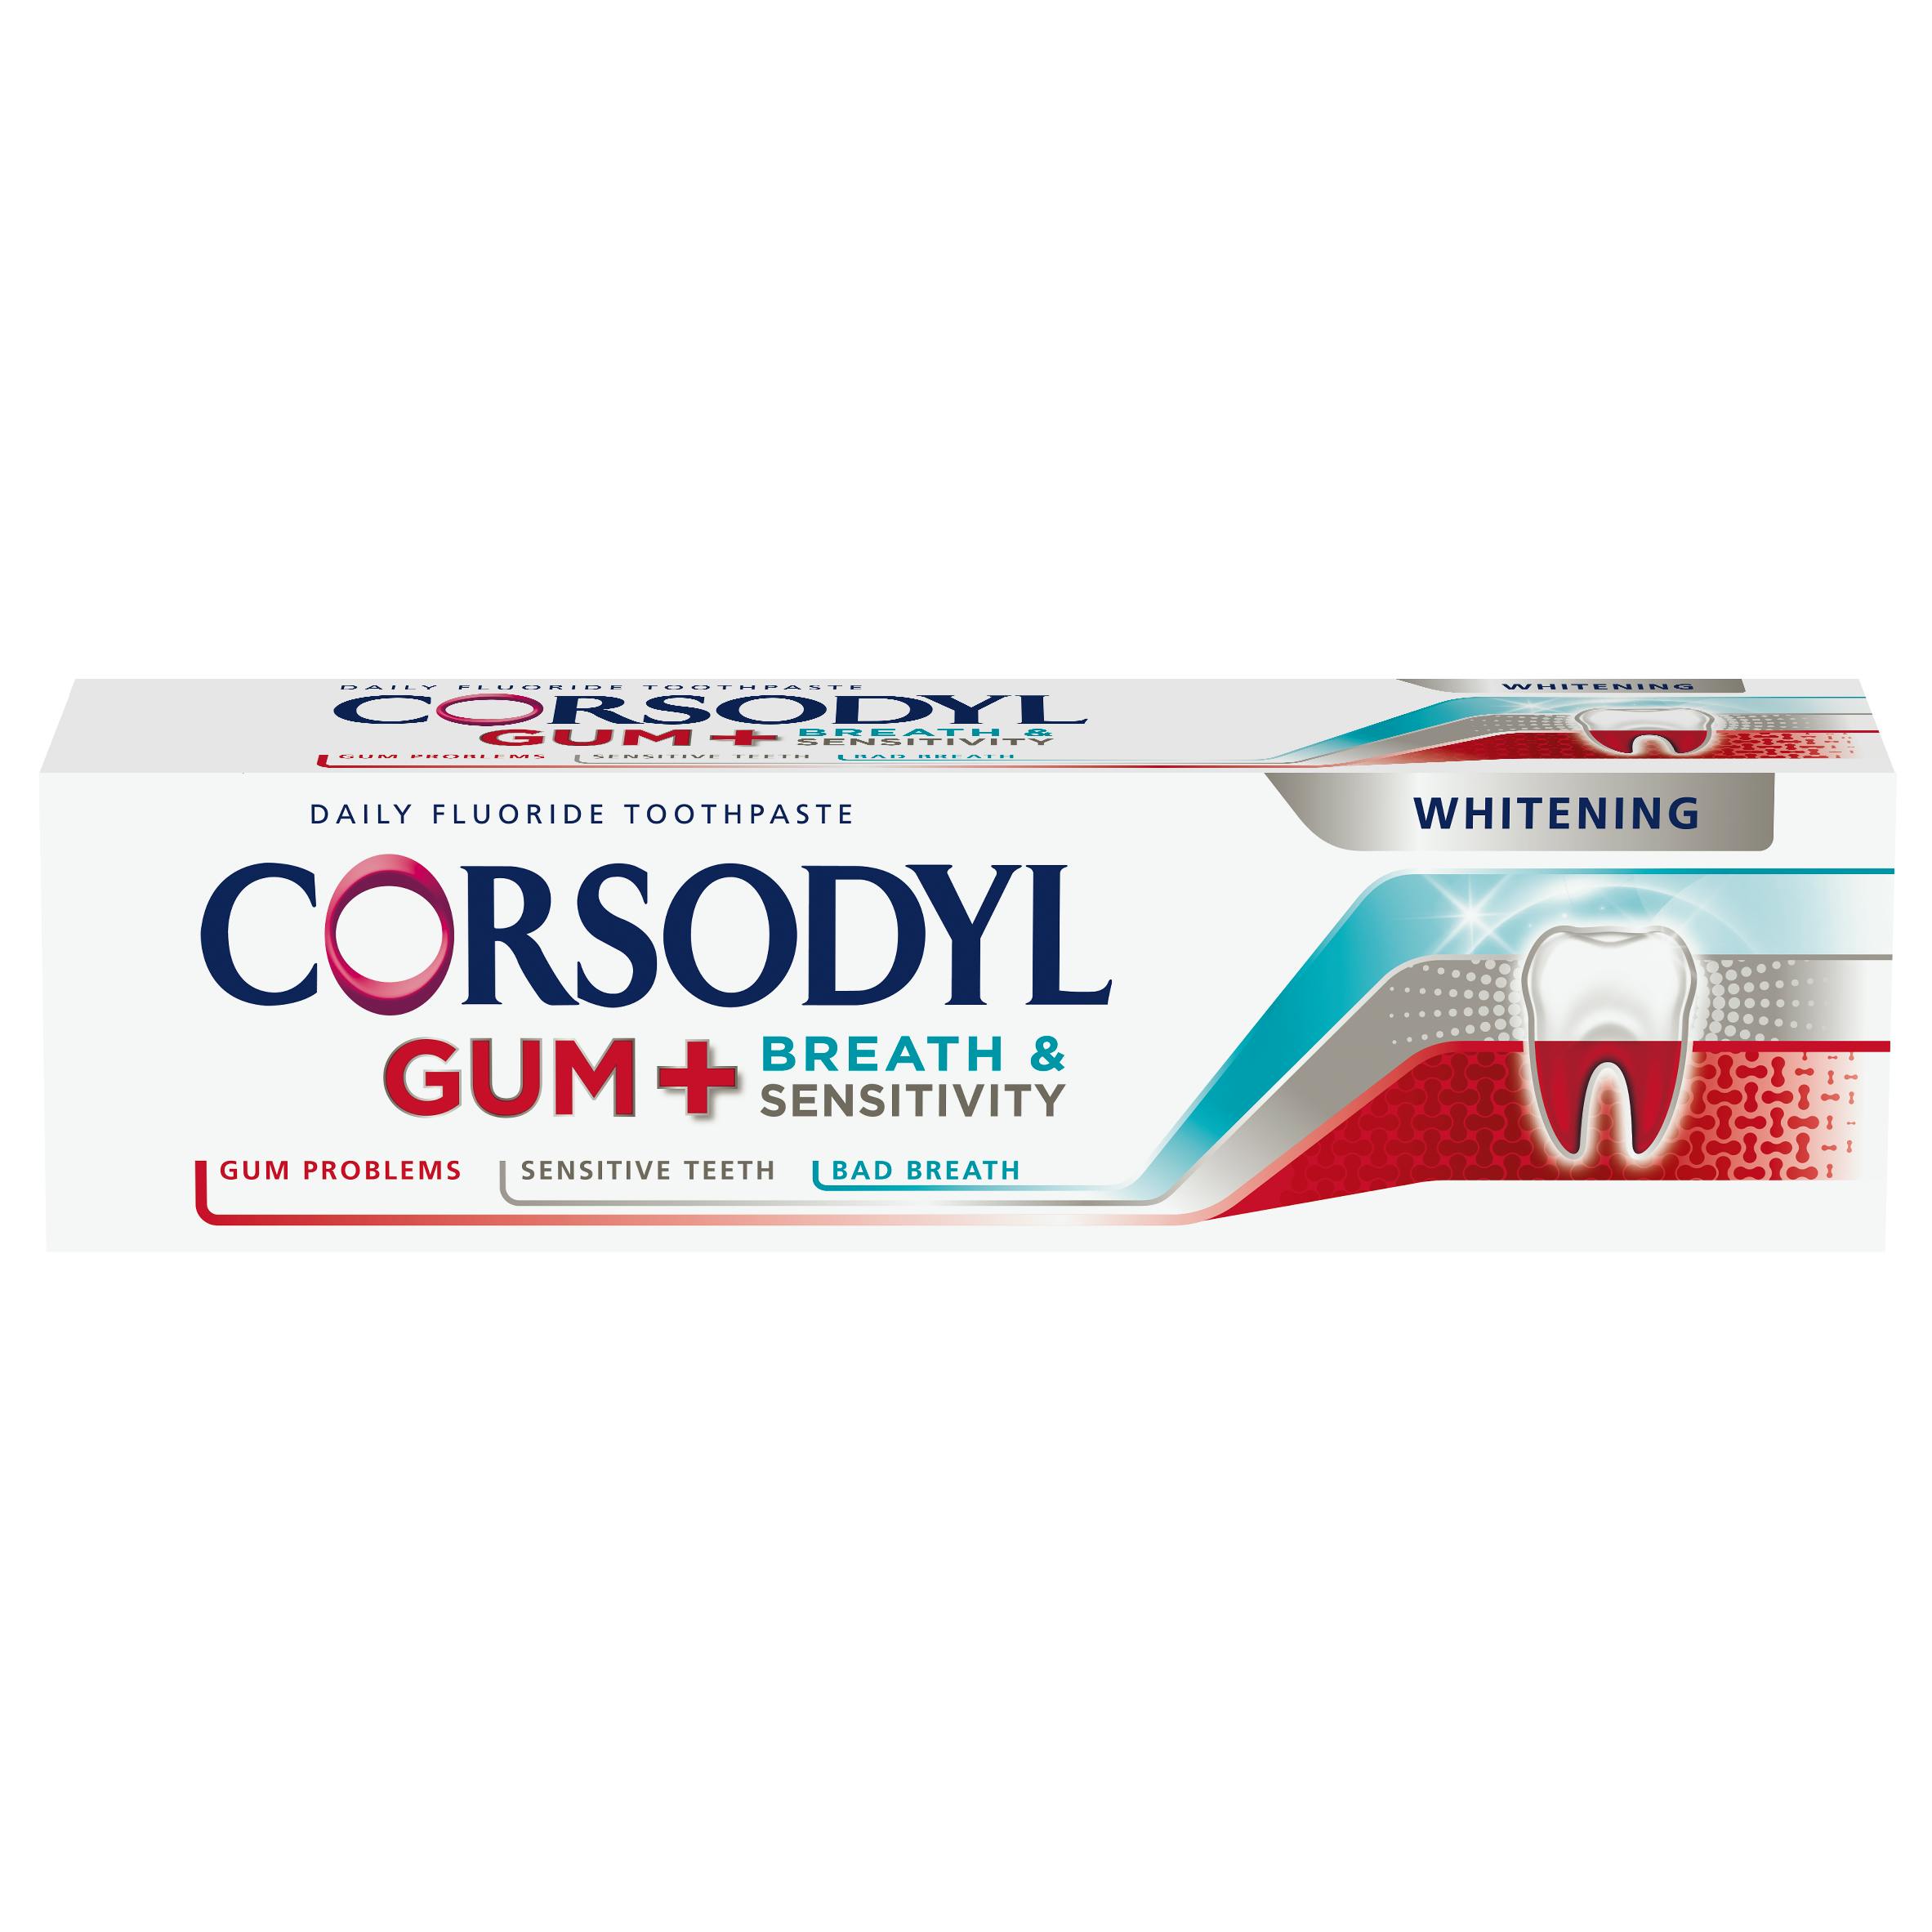 Corsodyl Gum+ Sensitivity & Breath Whitening